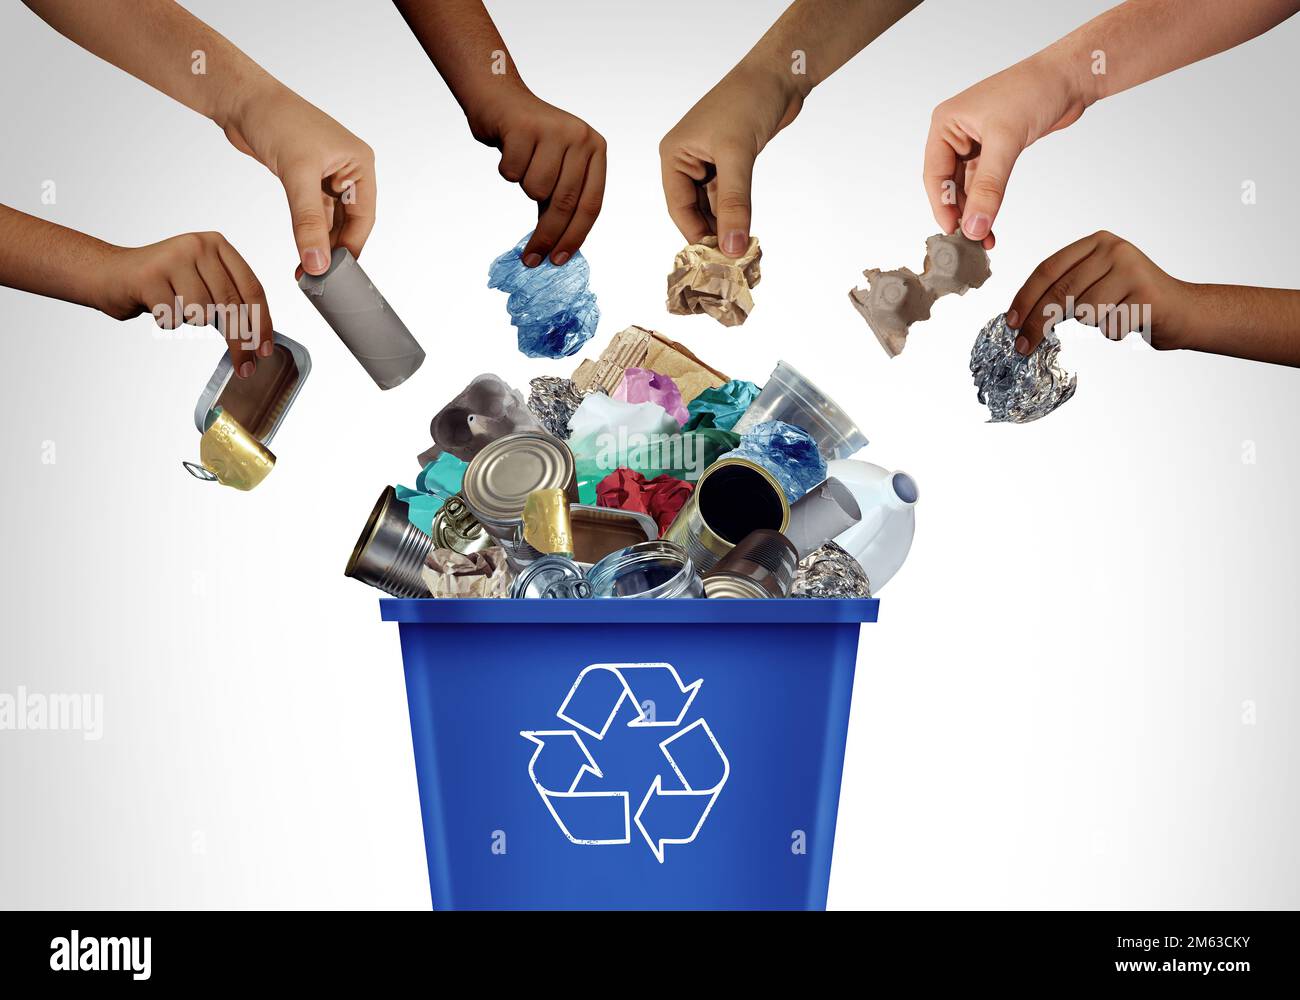 Recyclage communautaire comme bac de recyclage bleu pour recycler les déchets et les déchets comme gestion des articles réutilisables comme vieux papier verre métal et plastique jeté Banque D'Images